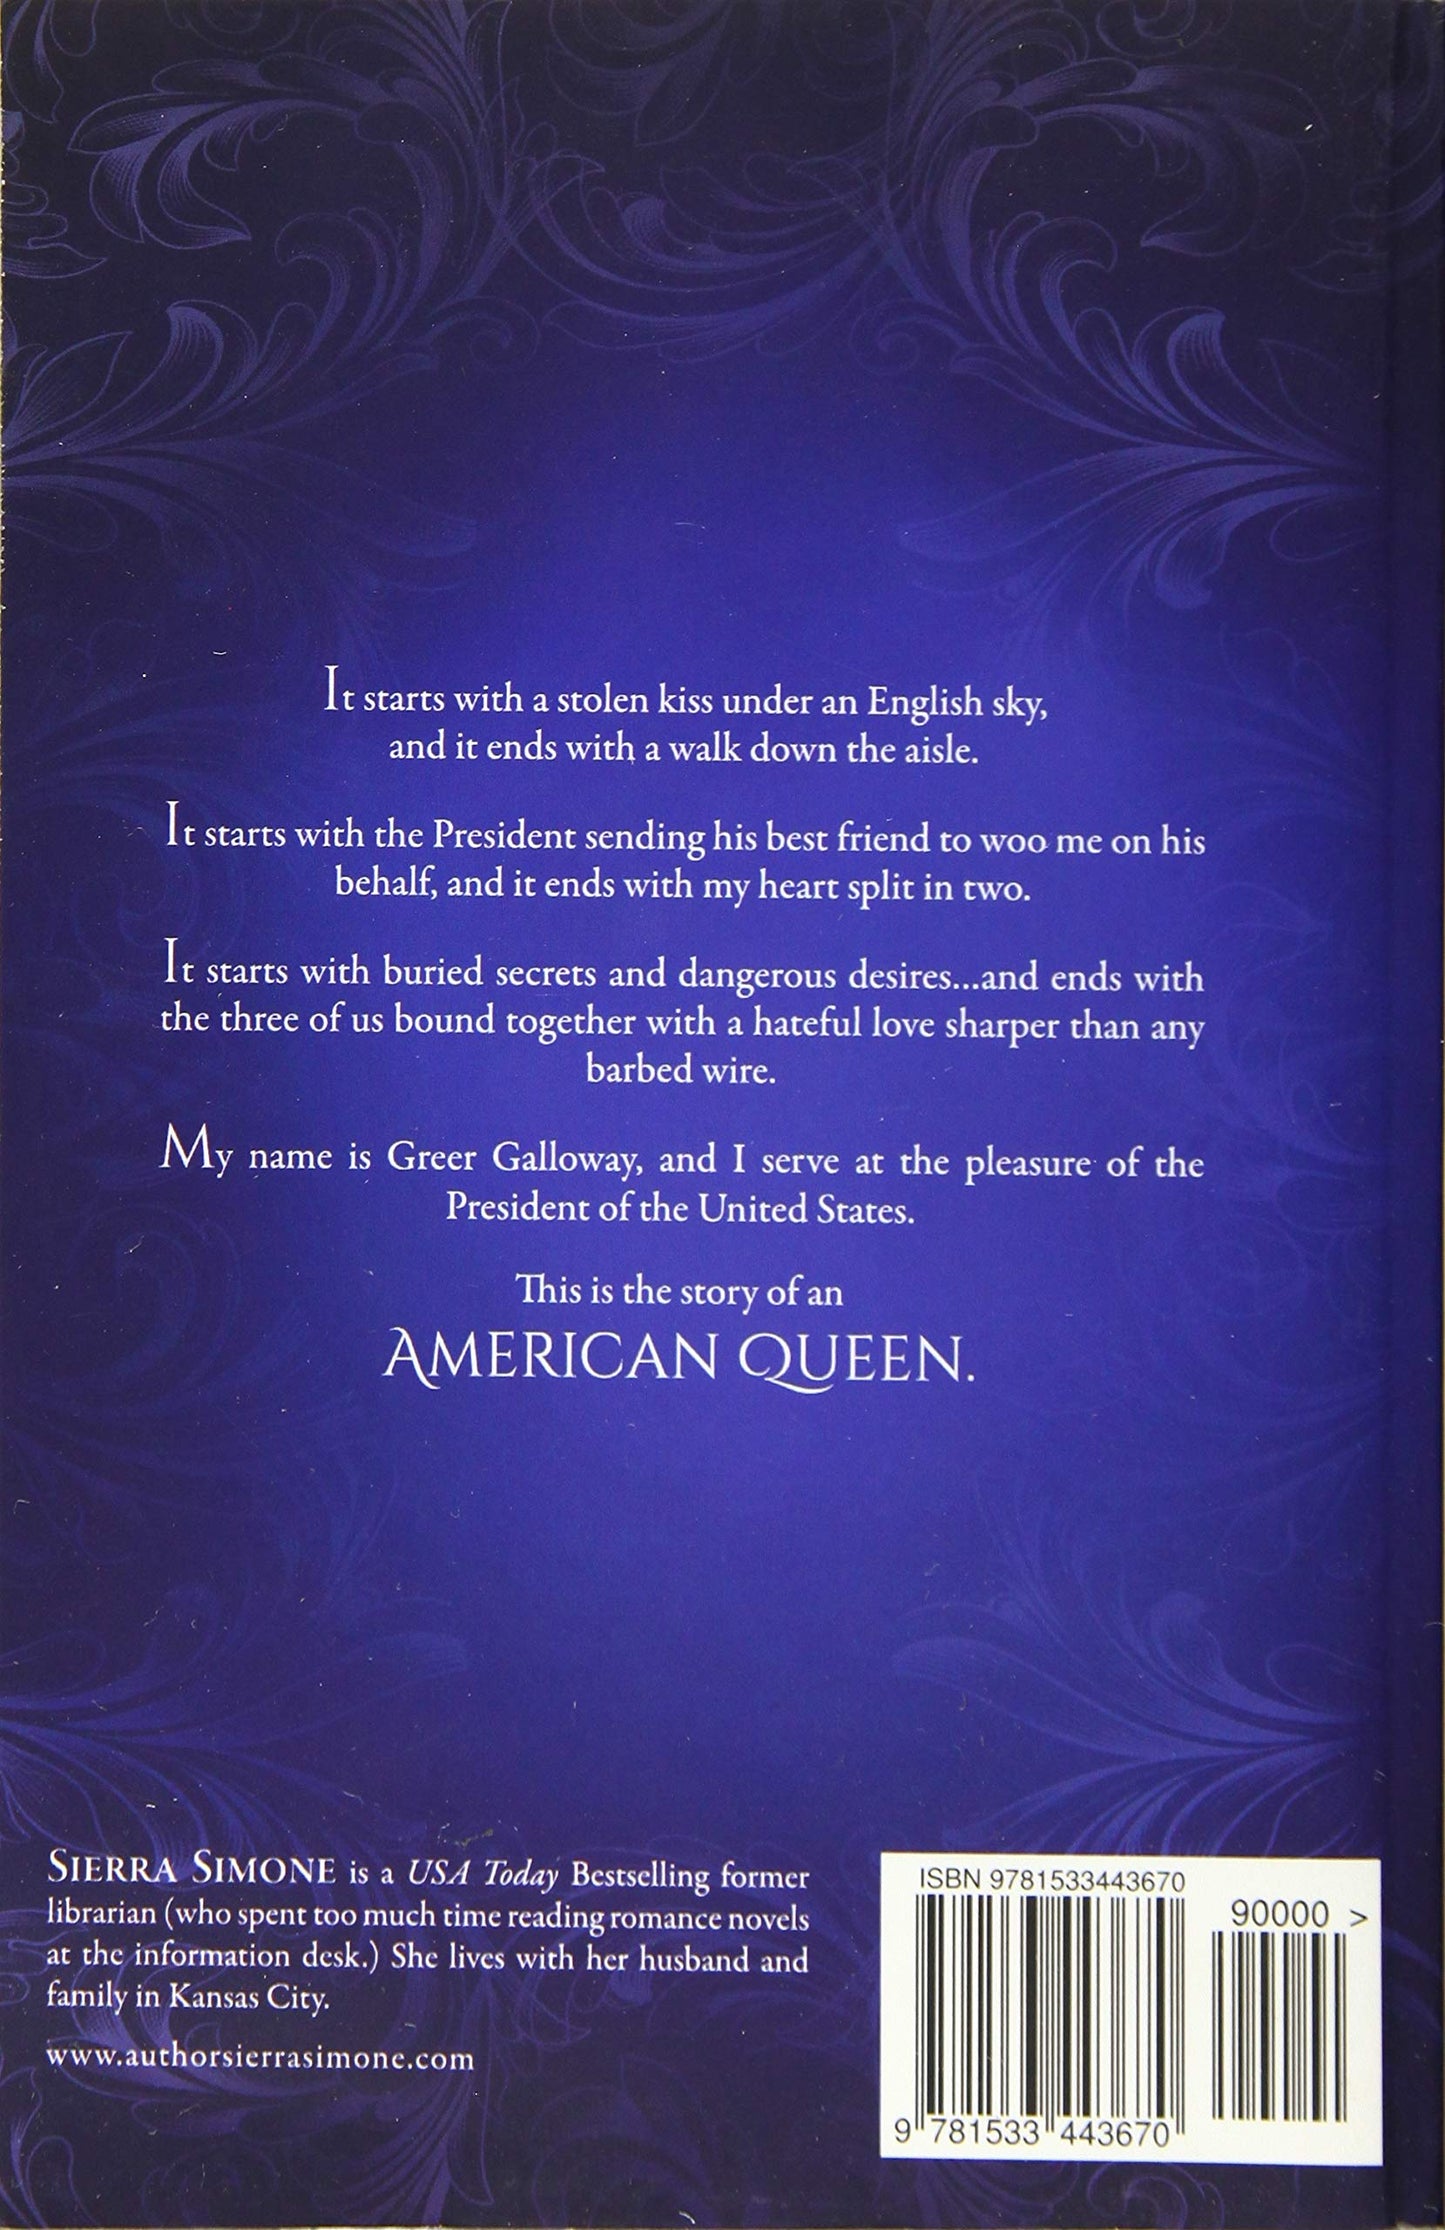 New Camelot Trilogy 1:American Queen - Booksondemand